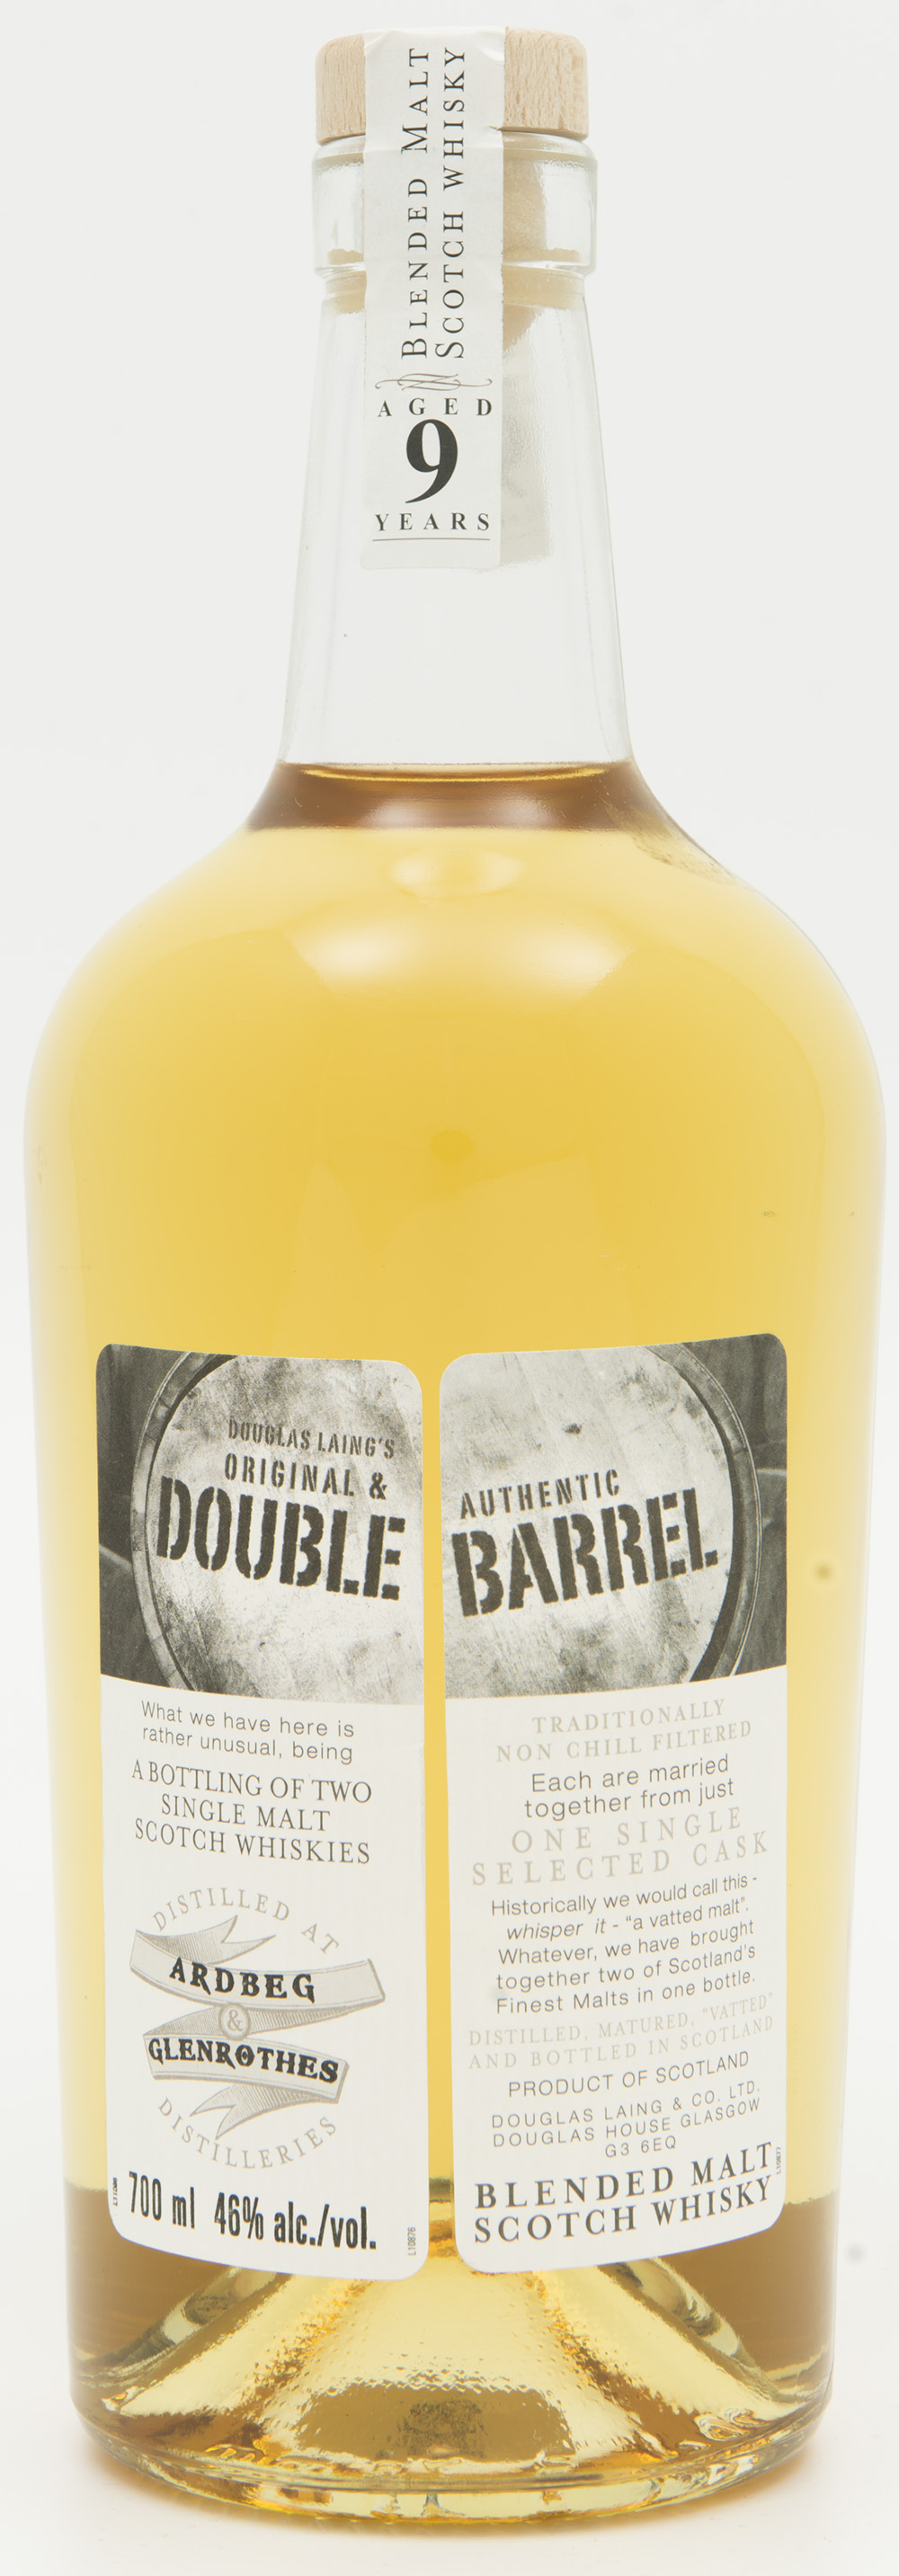 Billede: DSC_3678 Douglas Laing's Double Barrel - Ardbeg and Glenrothes - bottle.jpg